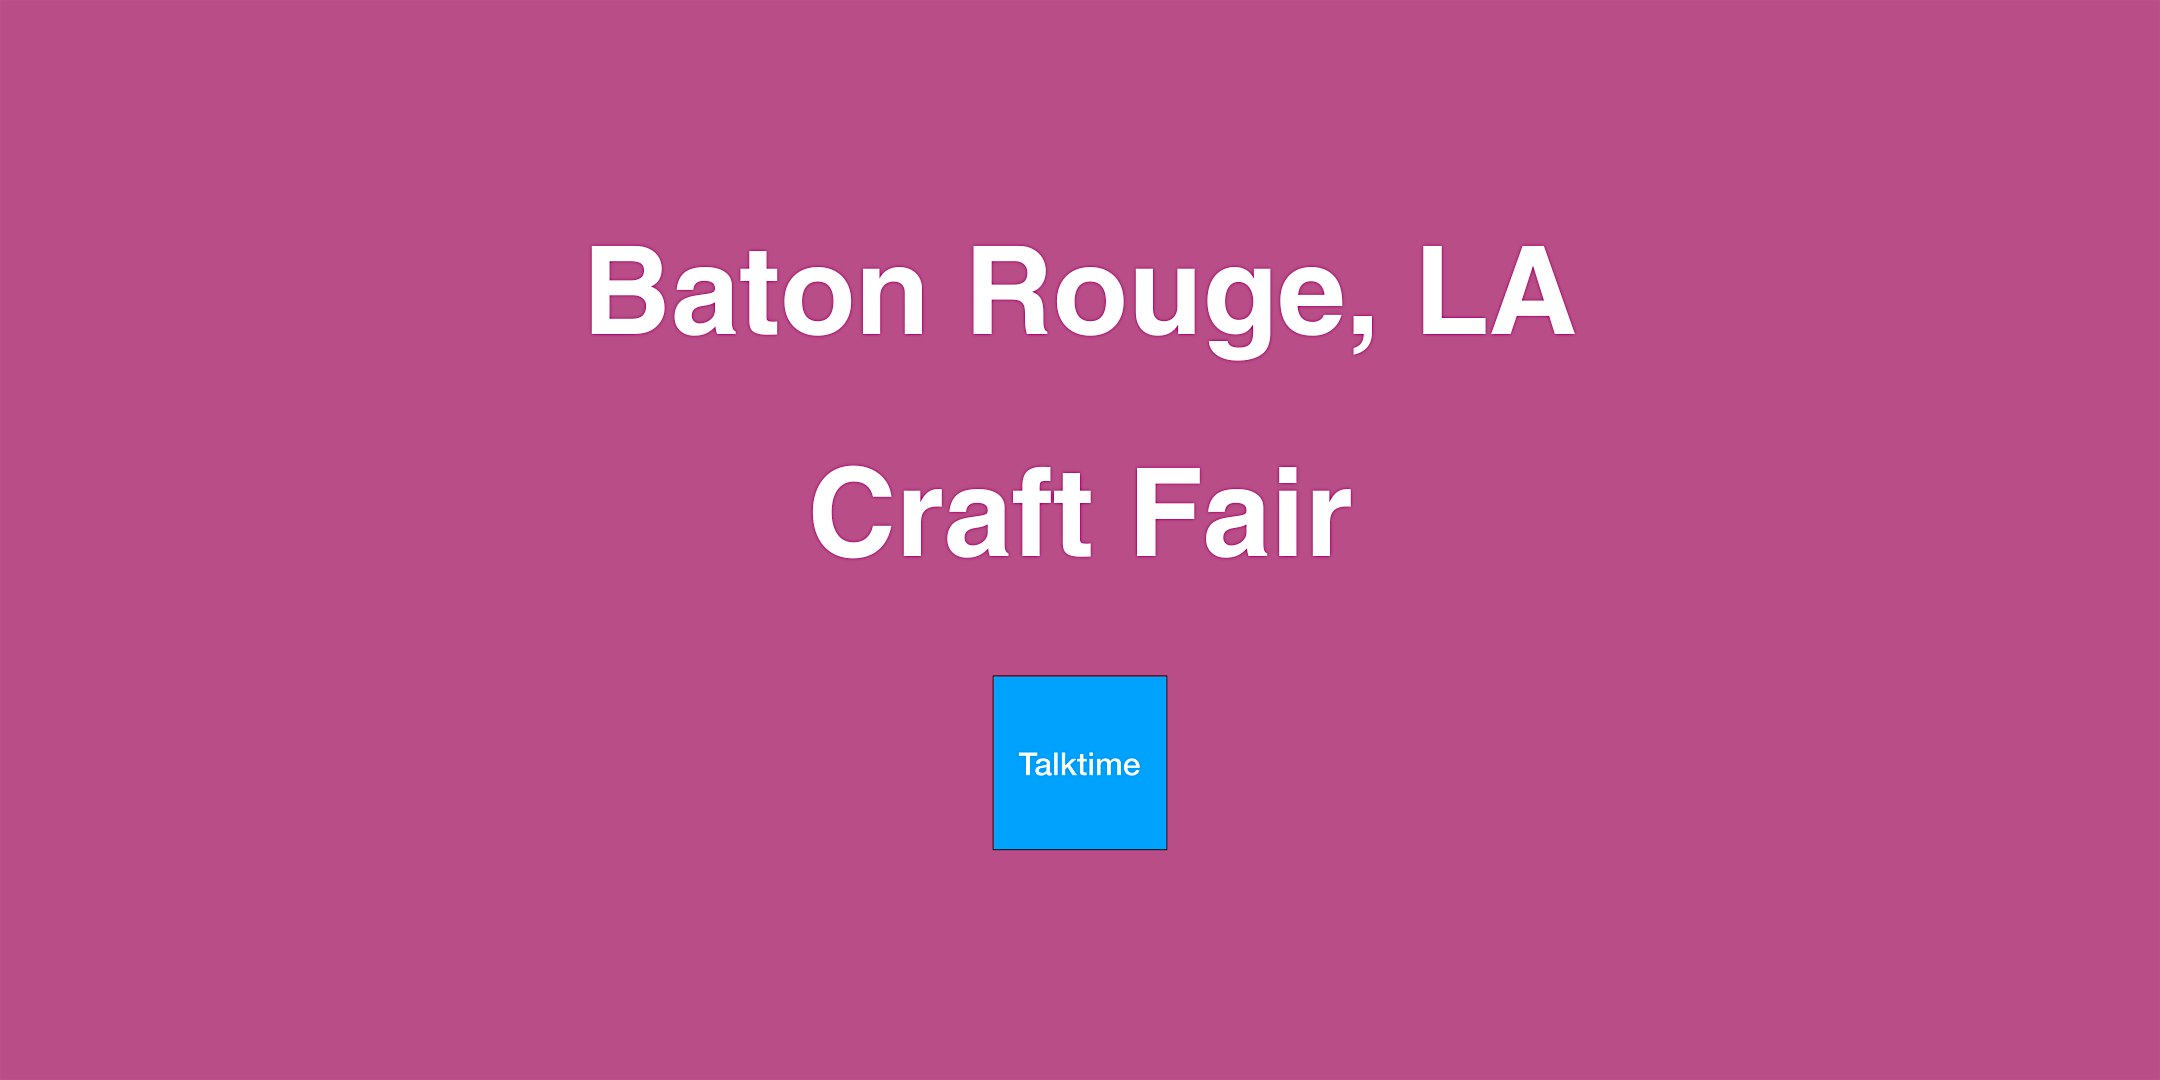 Craft Fair - Baton Rouge